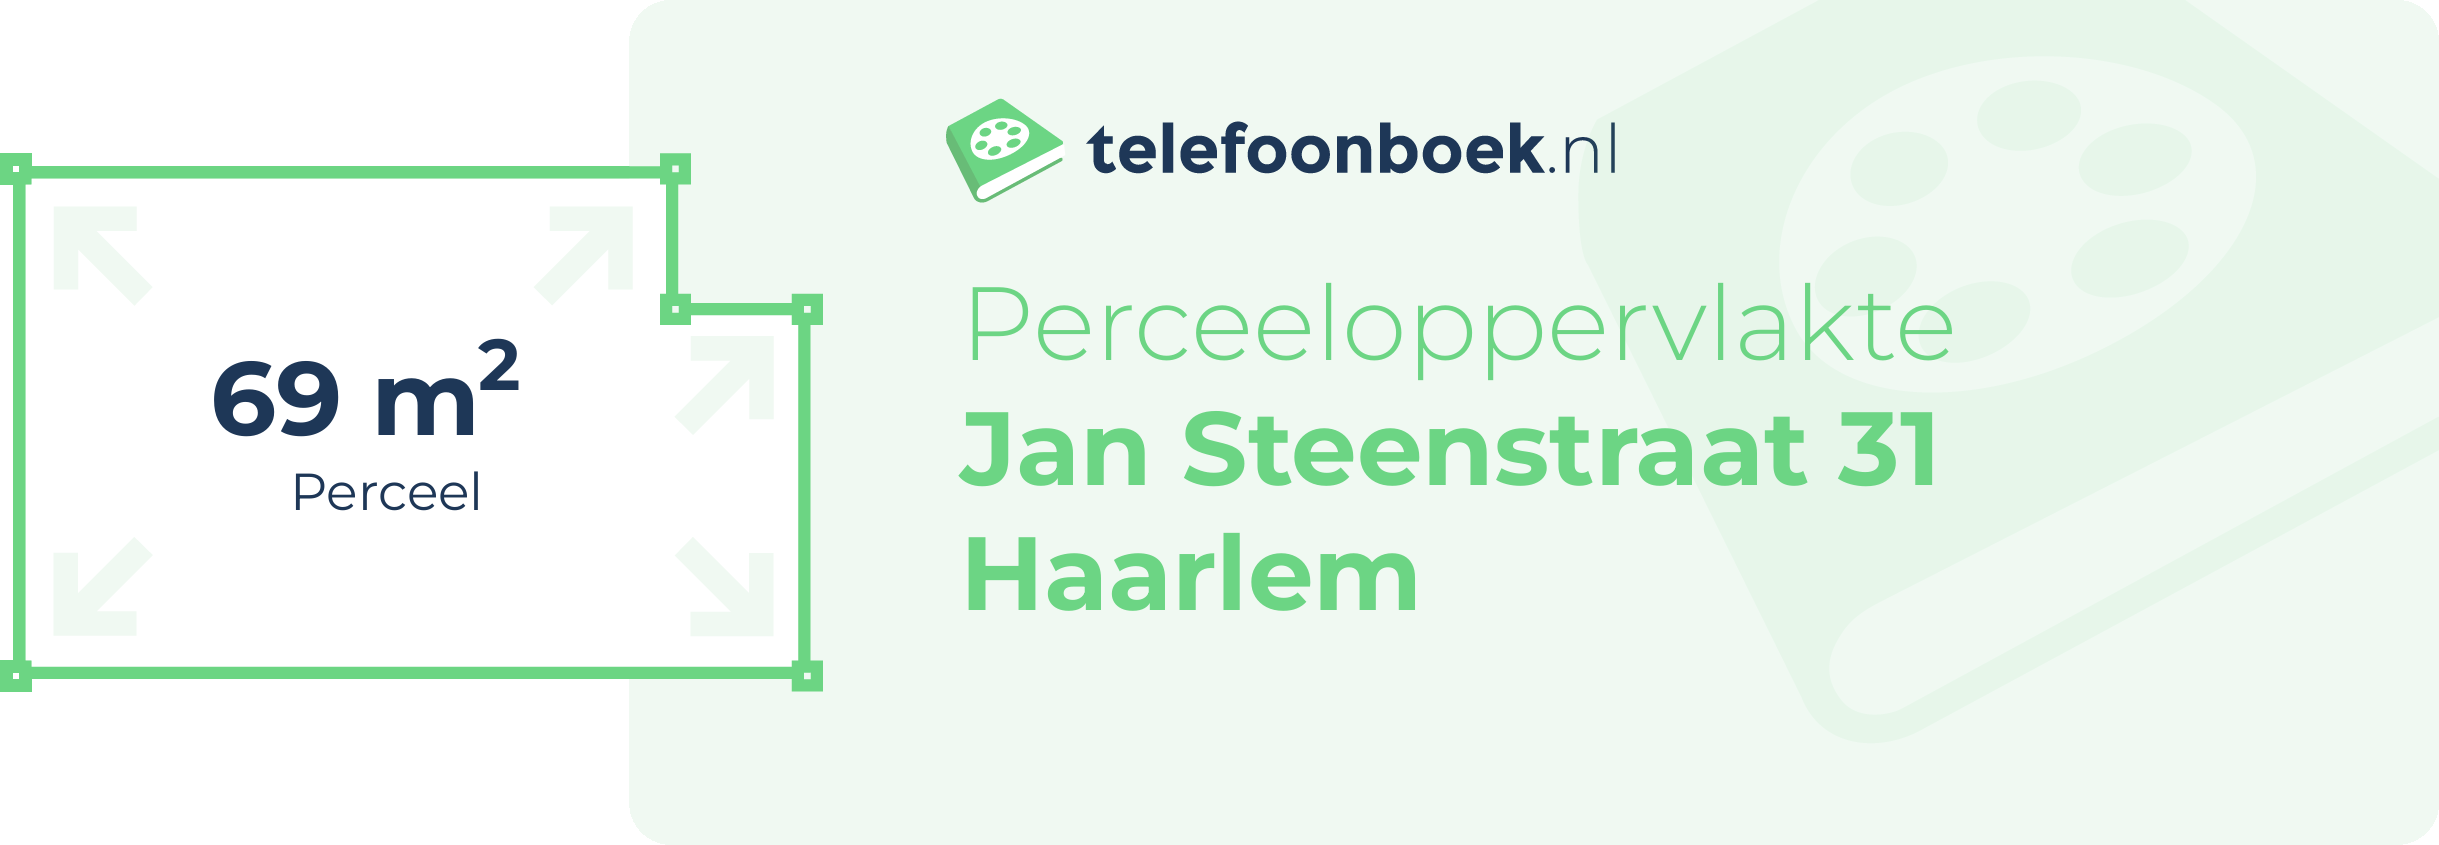 Perceeloppervlakte Jan Steenstraat 31 Haarlem